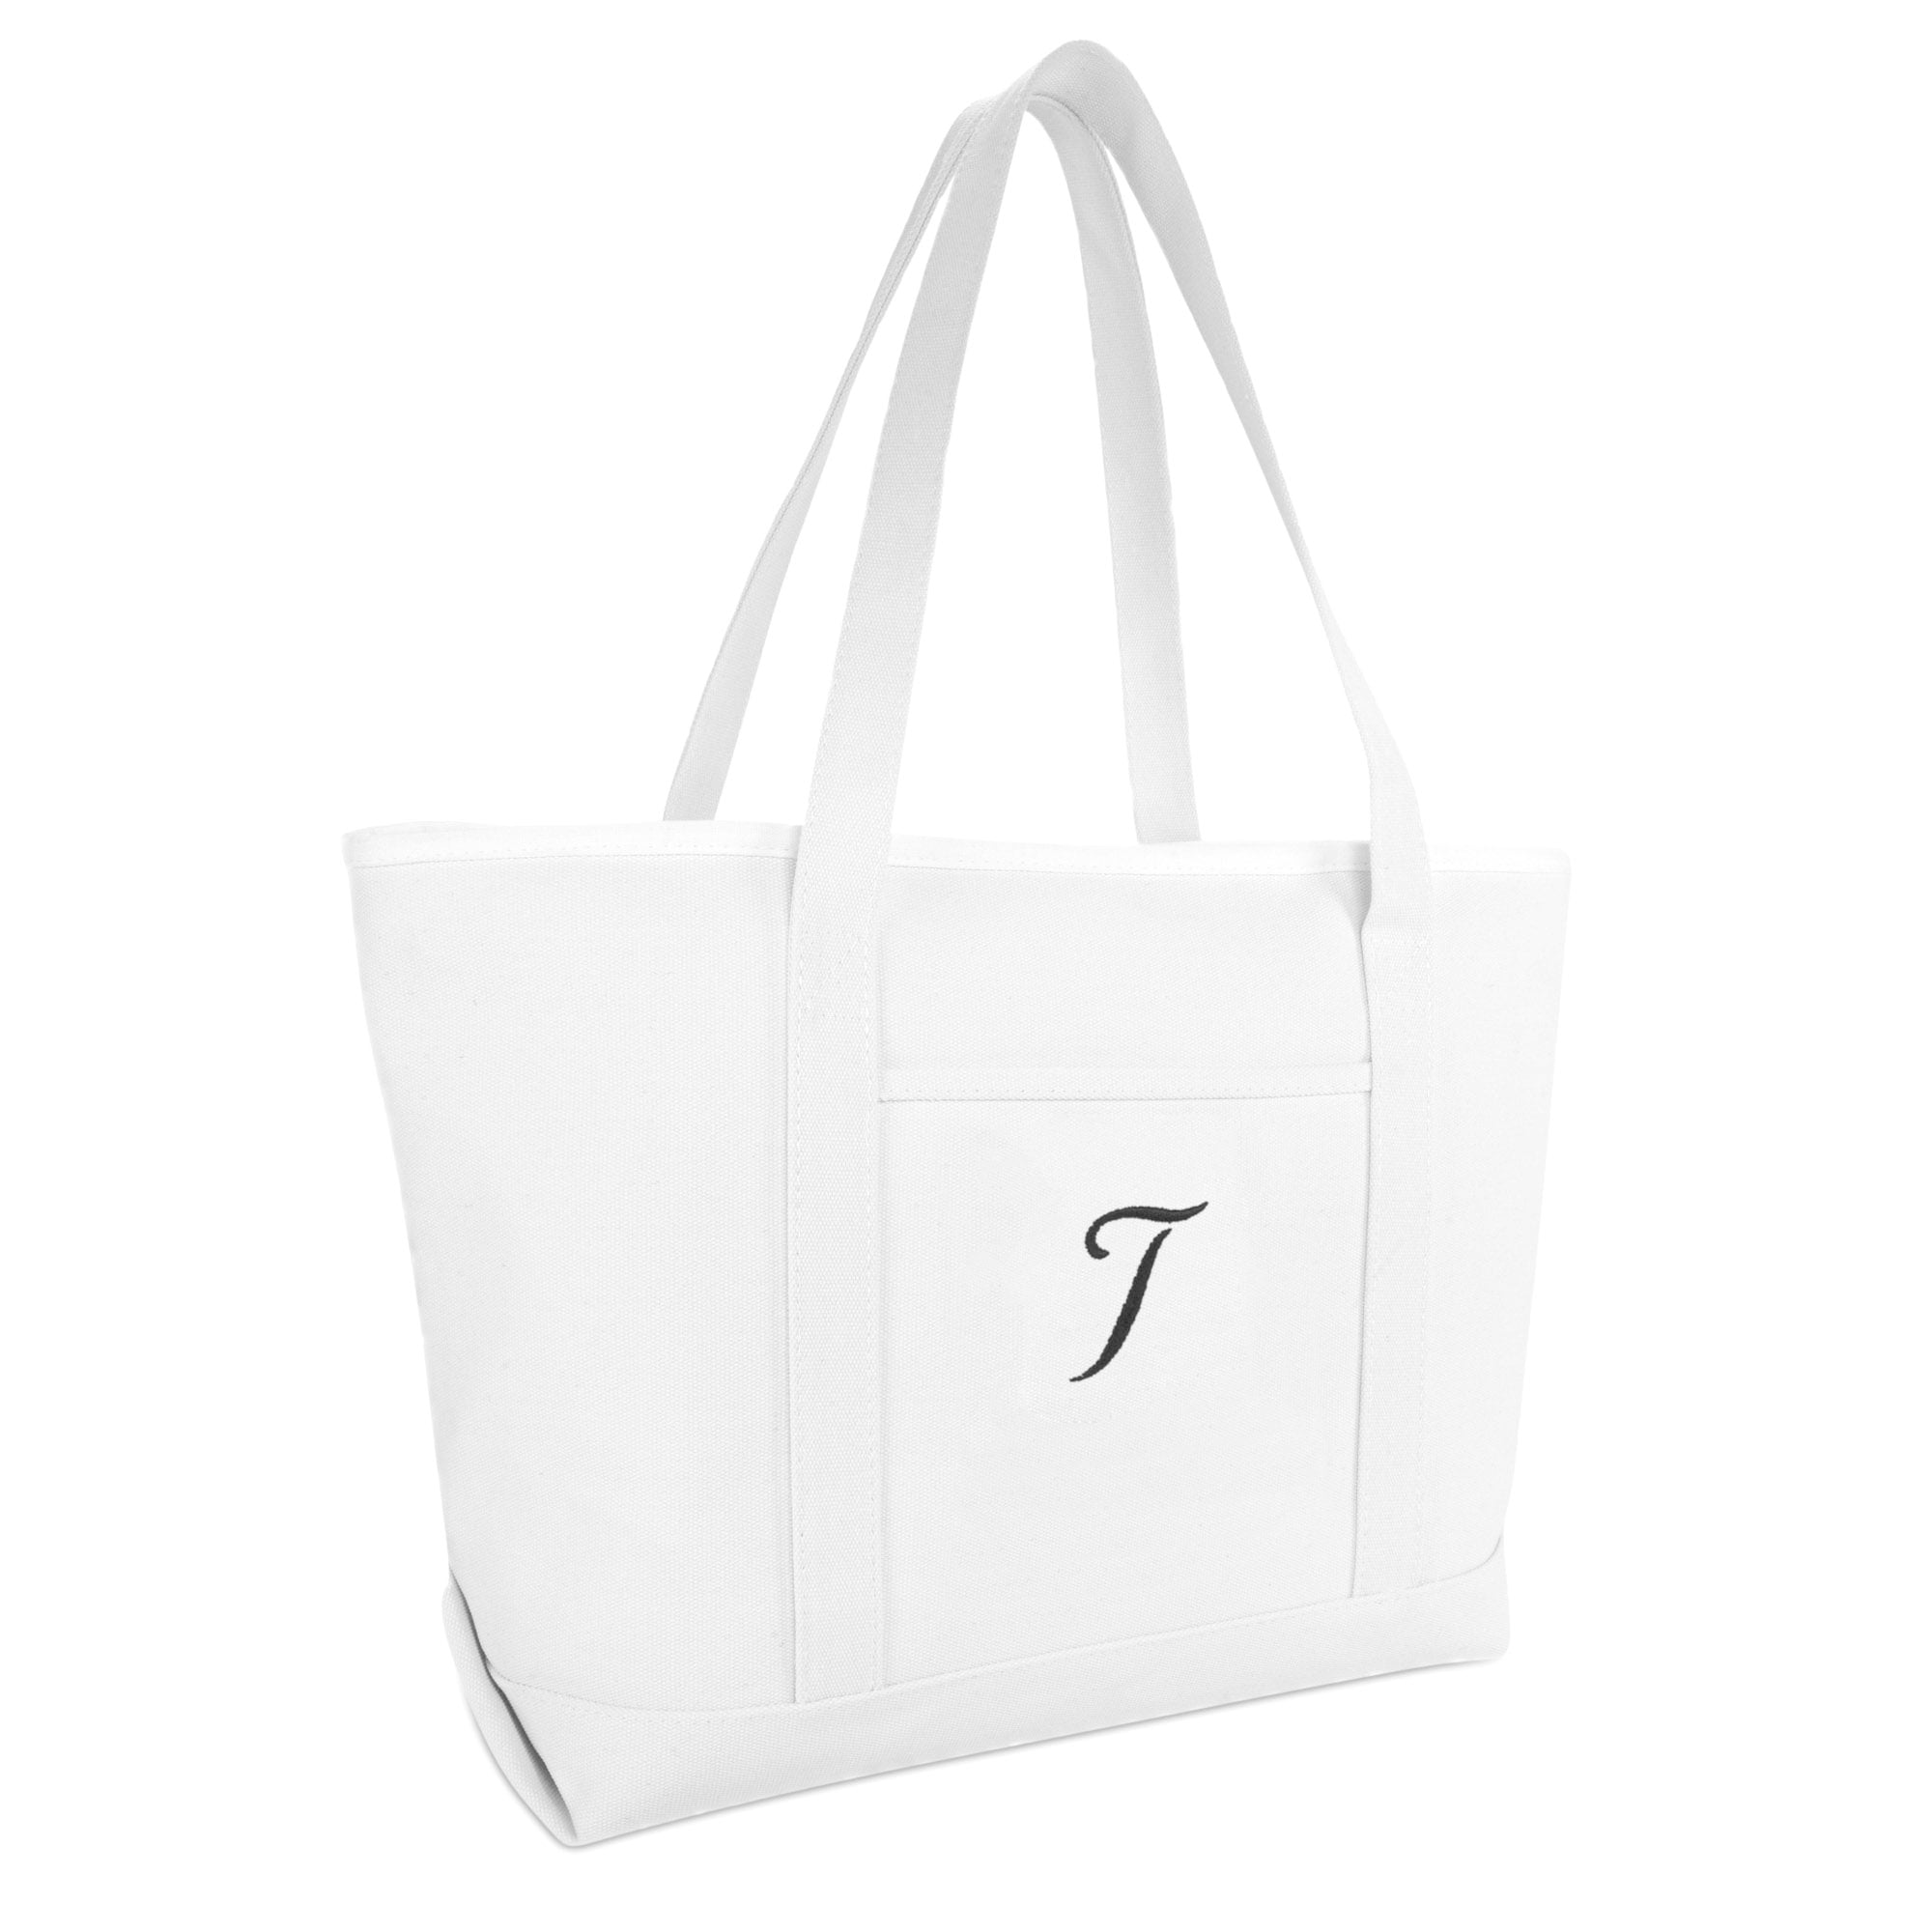 Z DALIX Womens Cotton Canvas Tote Bag Large Shoulder Bags Pink Monogram A